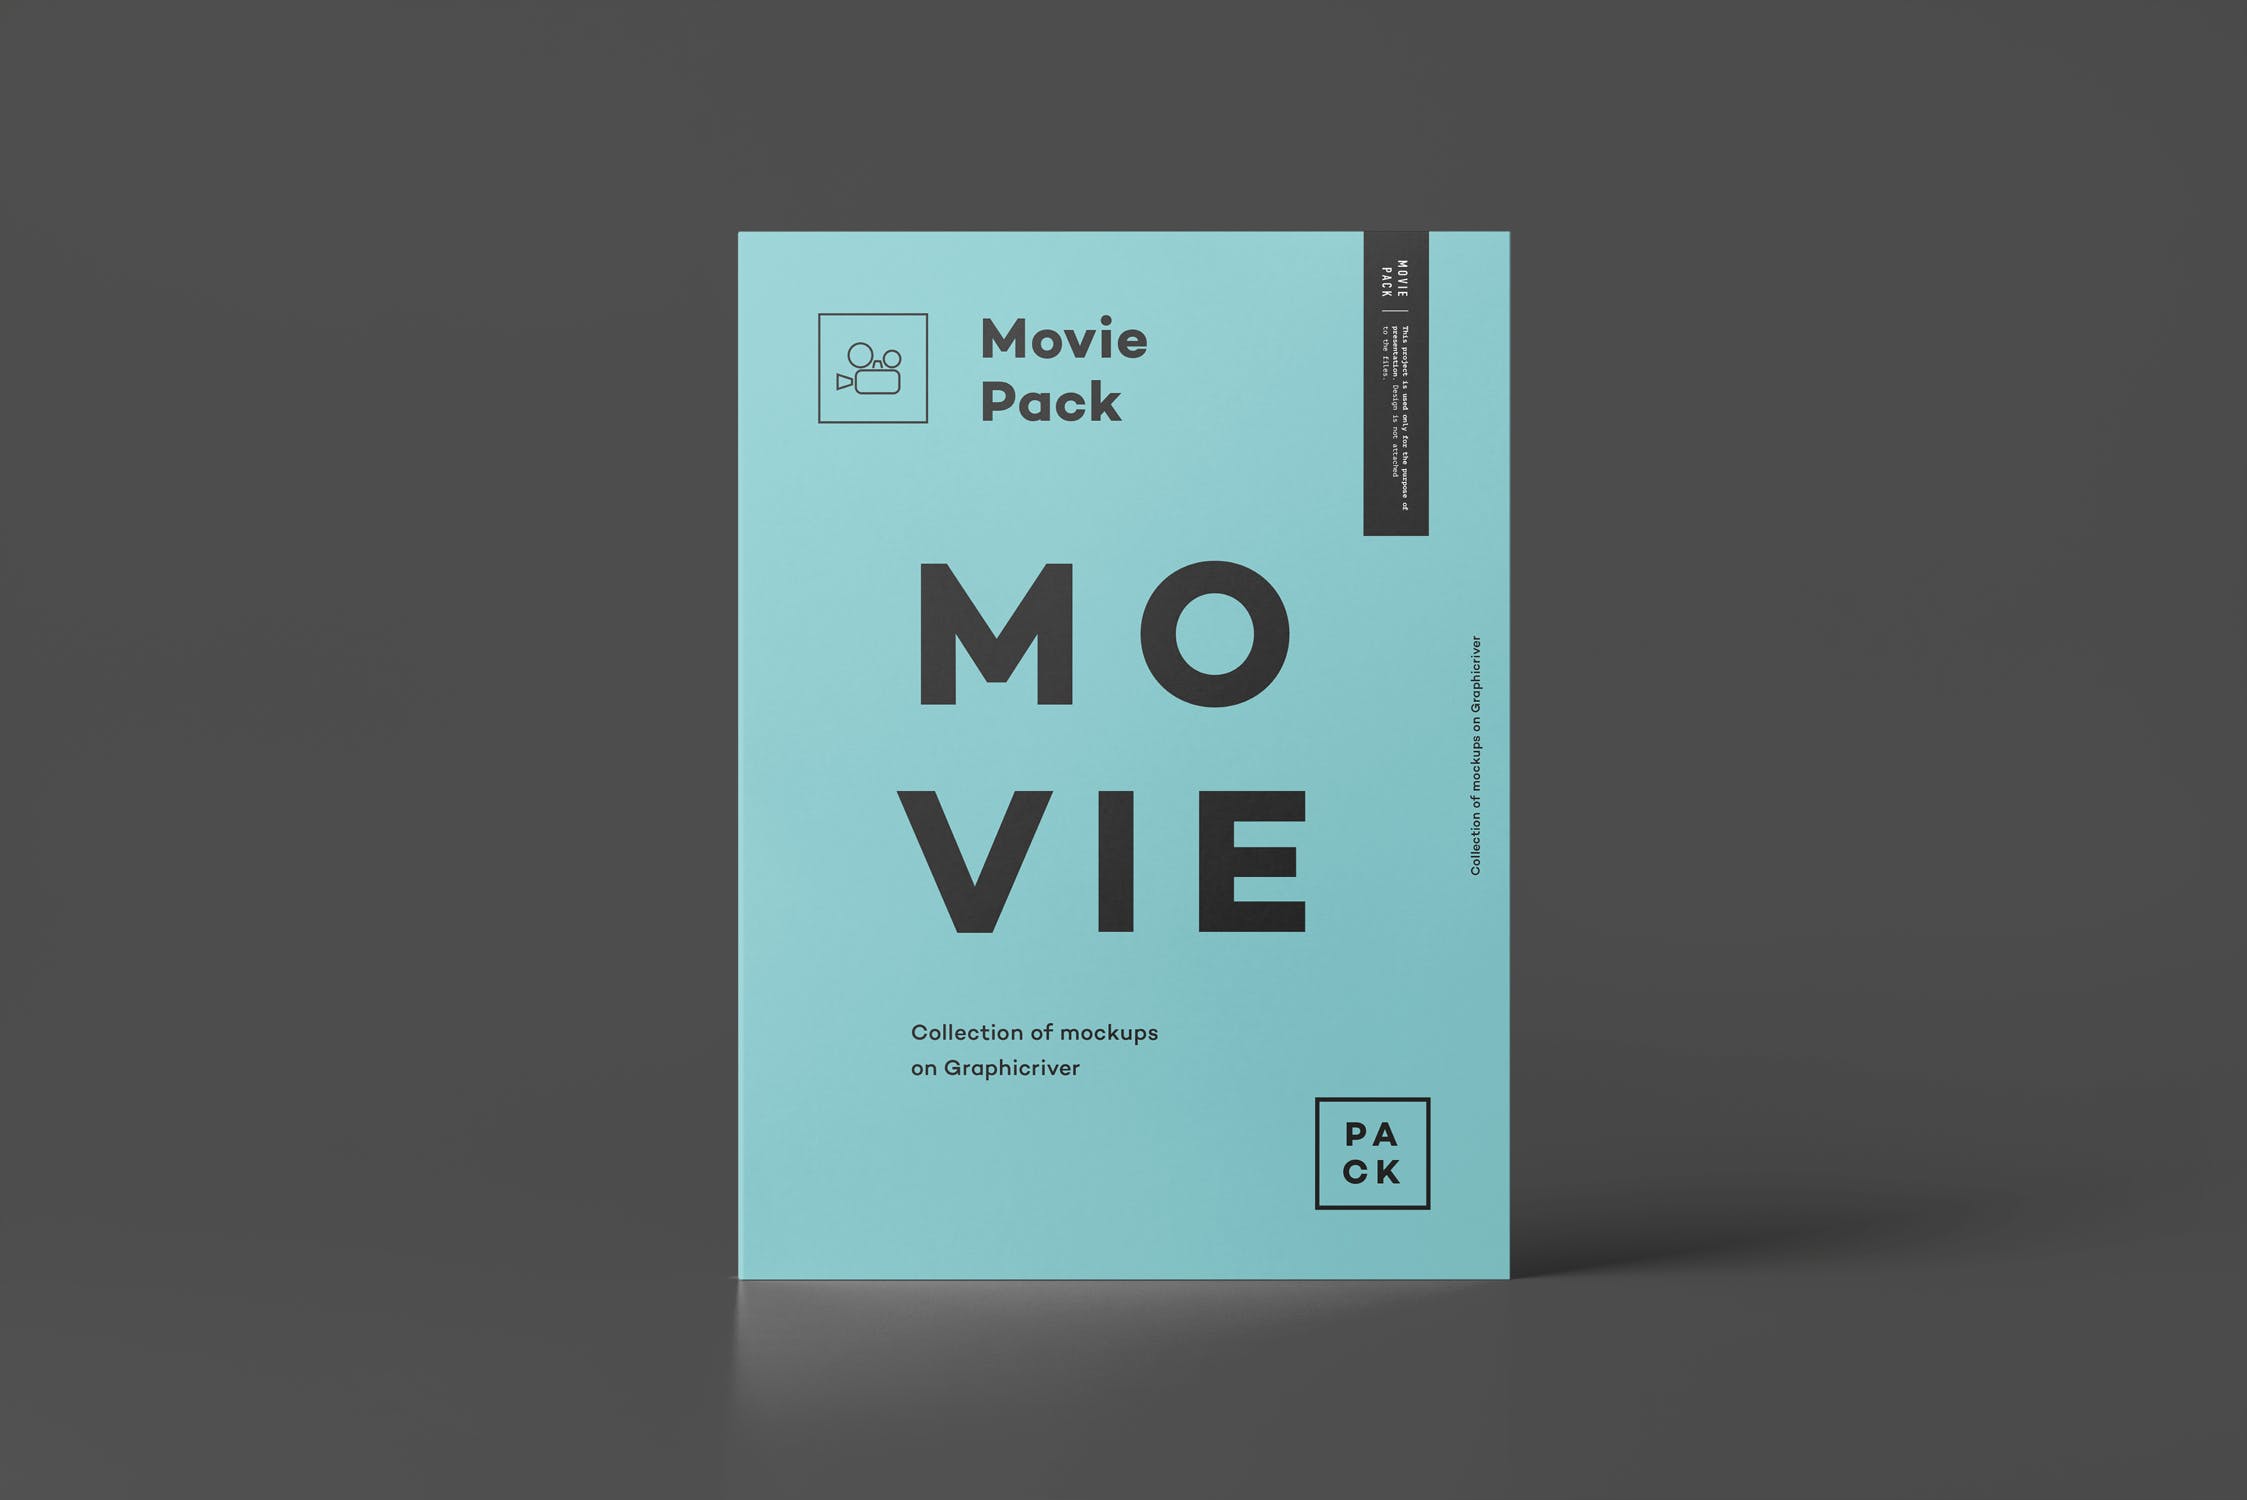 电影DVD包装盒外观设计样机3 Movie Pack Mock-up 3插图(12)